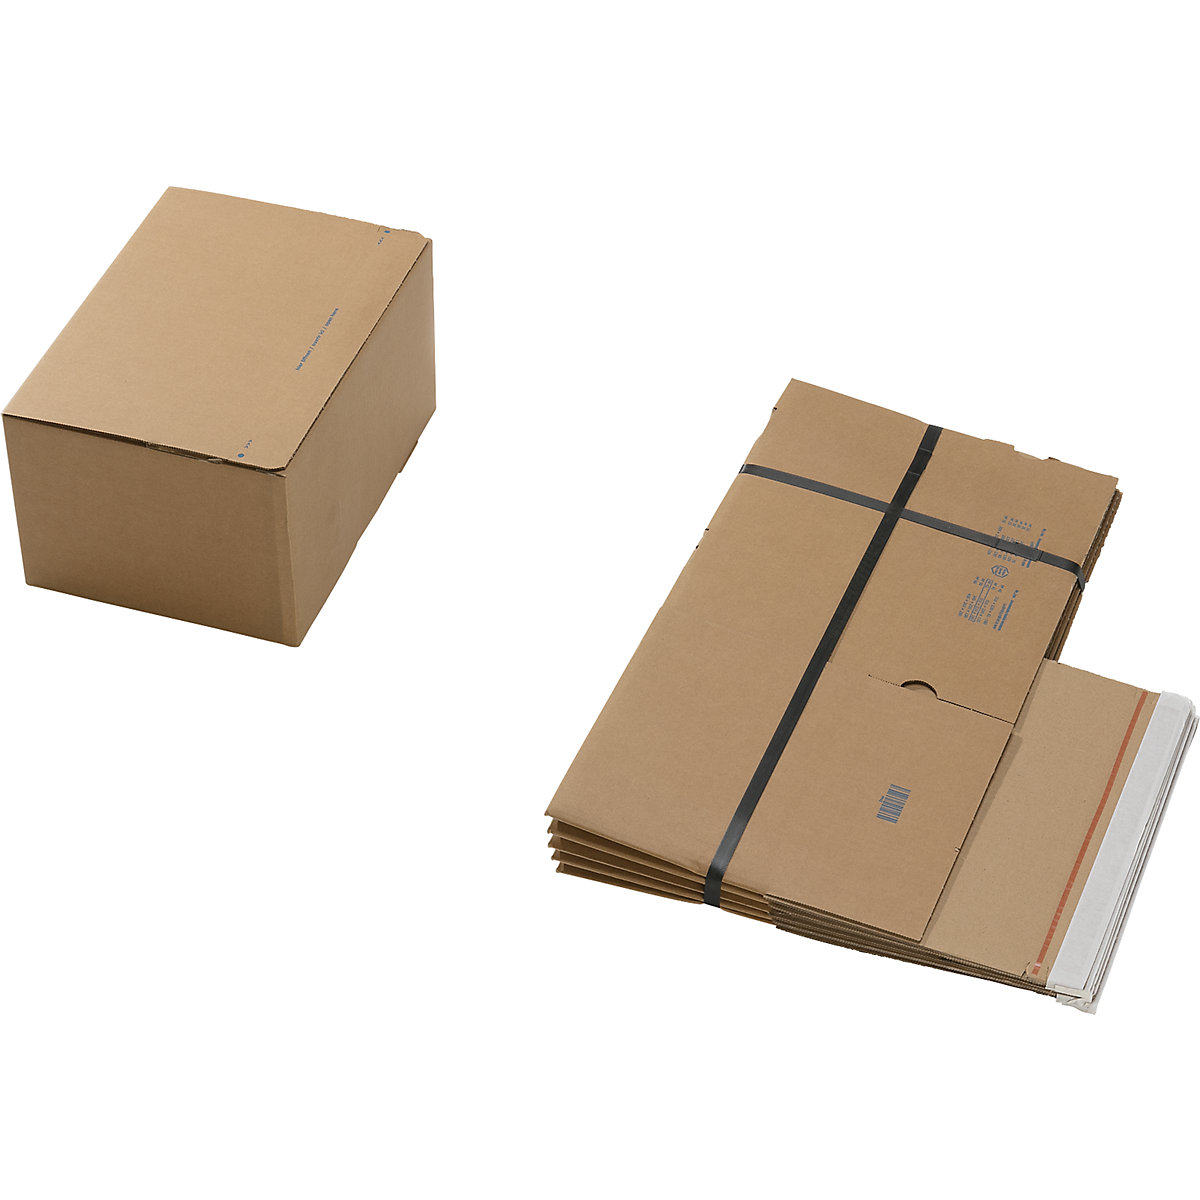 Caixa de cartão de envio, com fundo automático e fecho autocolante, dimensões interiores CxLxA 310 x 230 x 160 mm, embalagem de 100 unidades-1